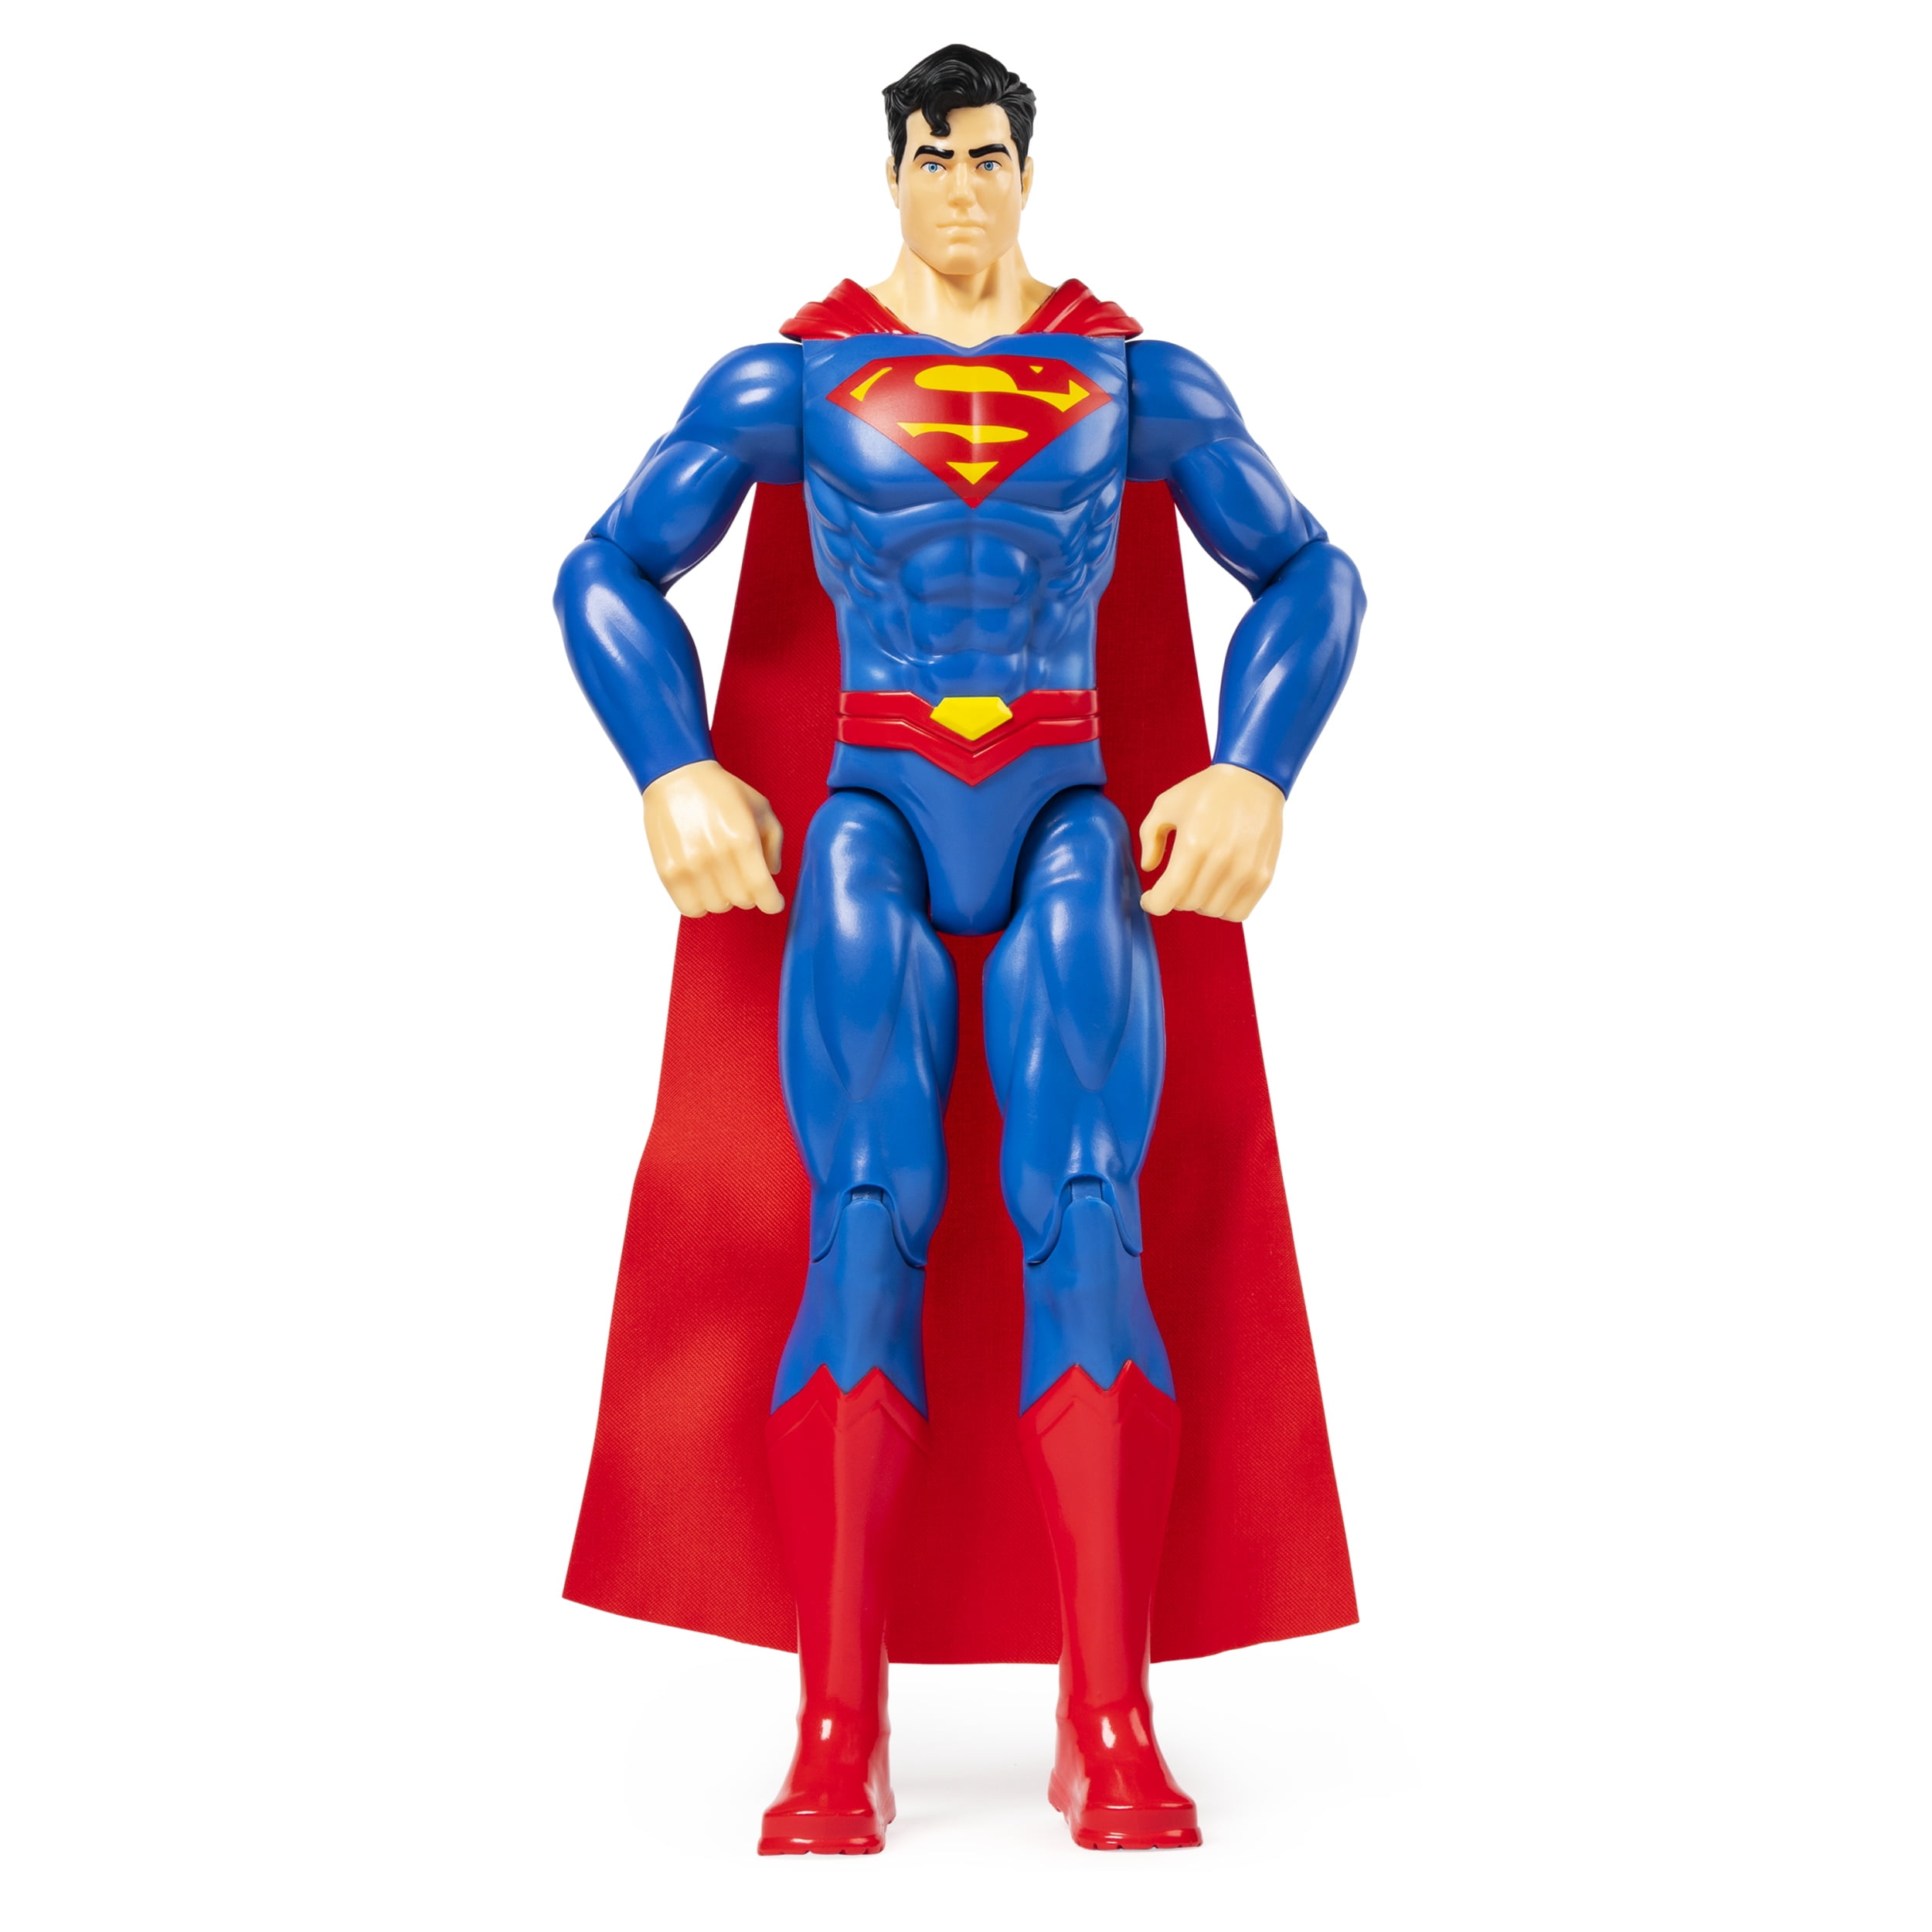 DC Universe Justice League Batman Superman Action Figures Comics Heroes Kids Toy 